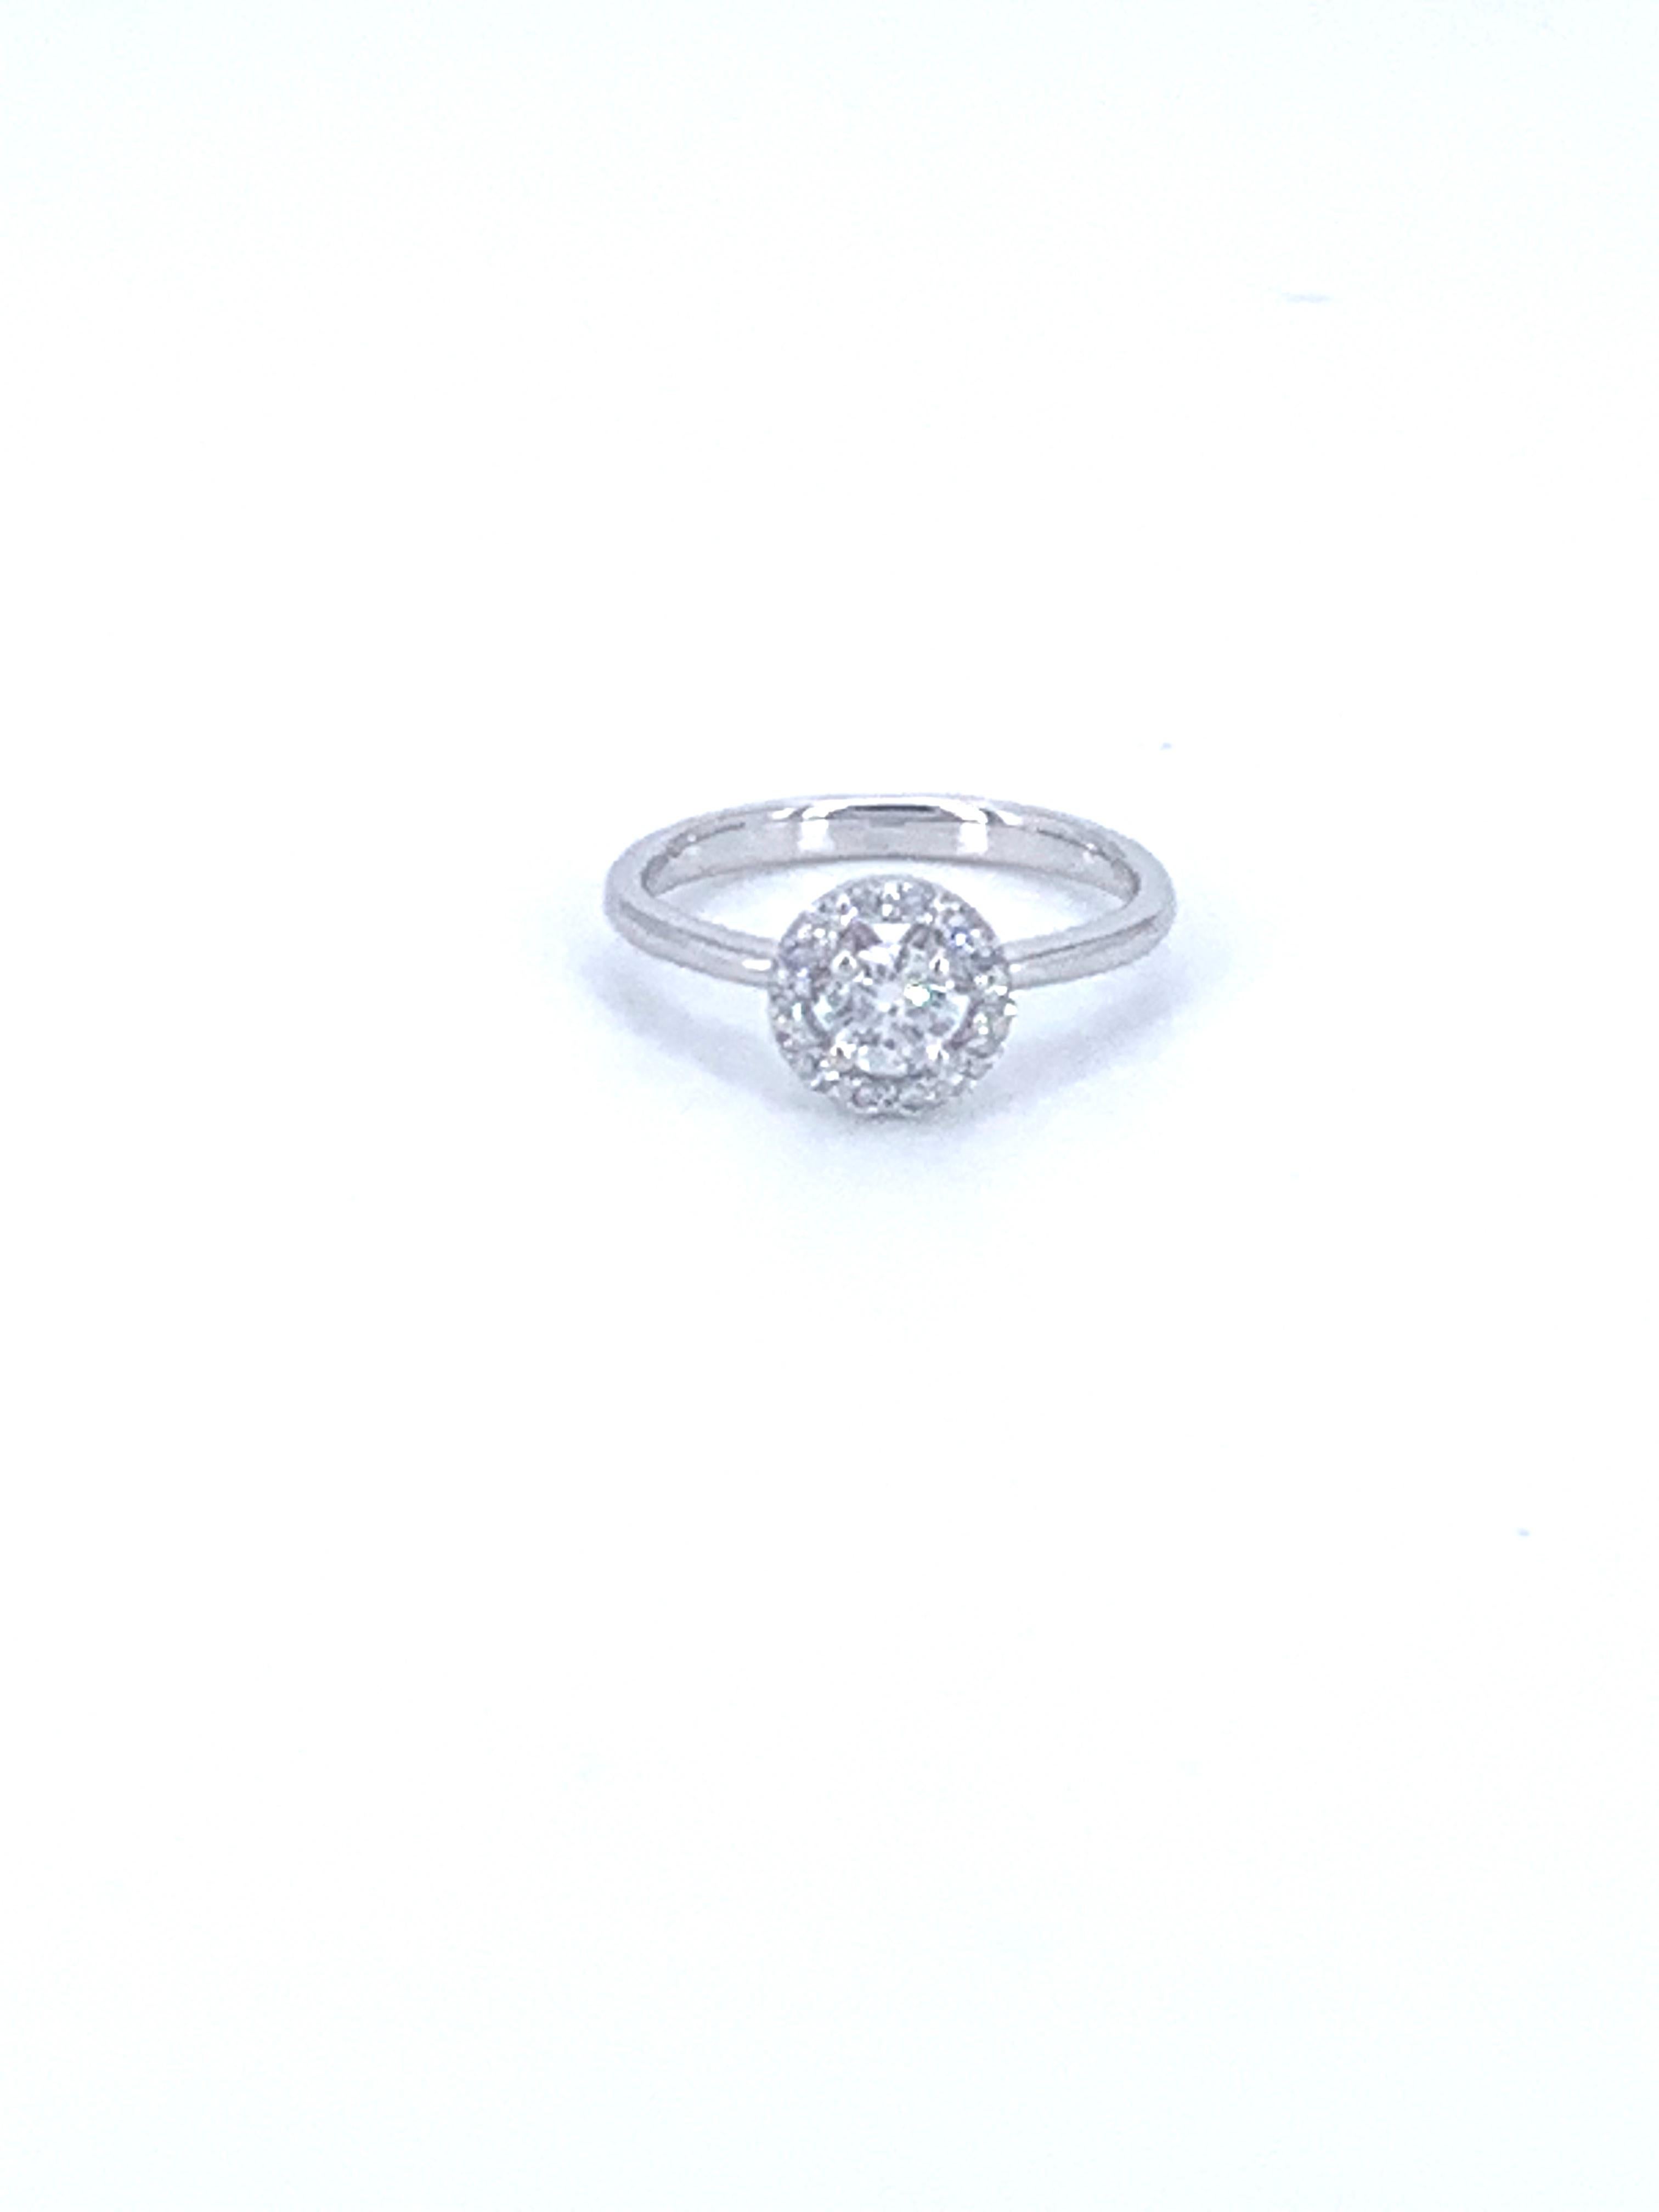 Cette bague en diamant solitaire Halo de 0,57 carat, de la collection Jennifer, est sertie en or blanc 18 carats. 

Il peut habiller magnifiquement n'importe quel doigt en ajoutant du glamour et du style à la main. Le cadeau idéal pour soi-même ou